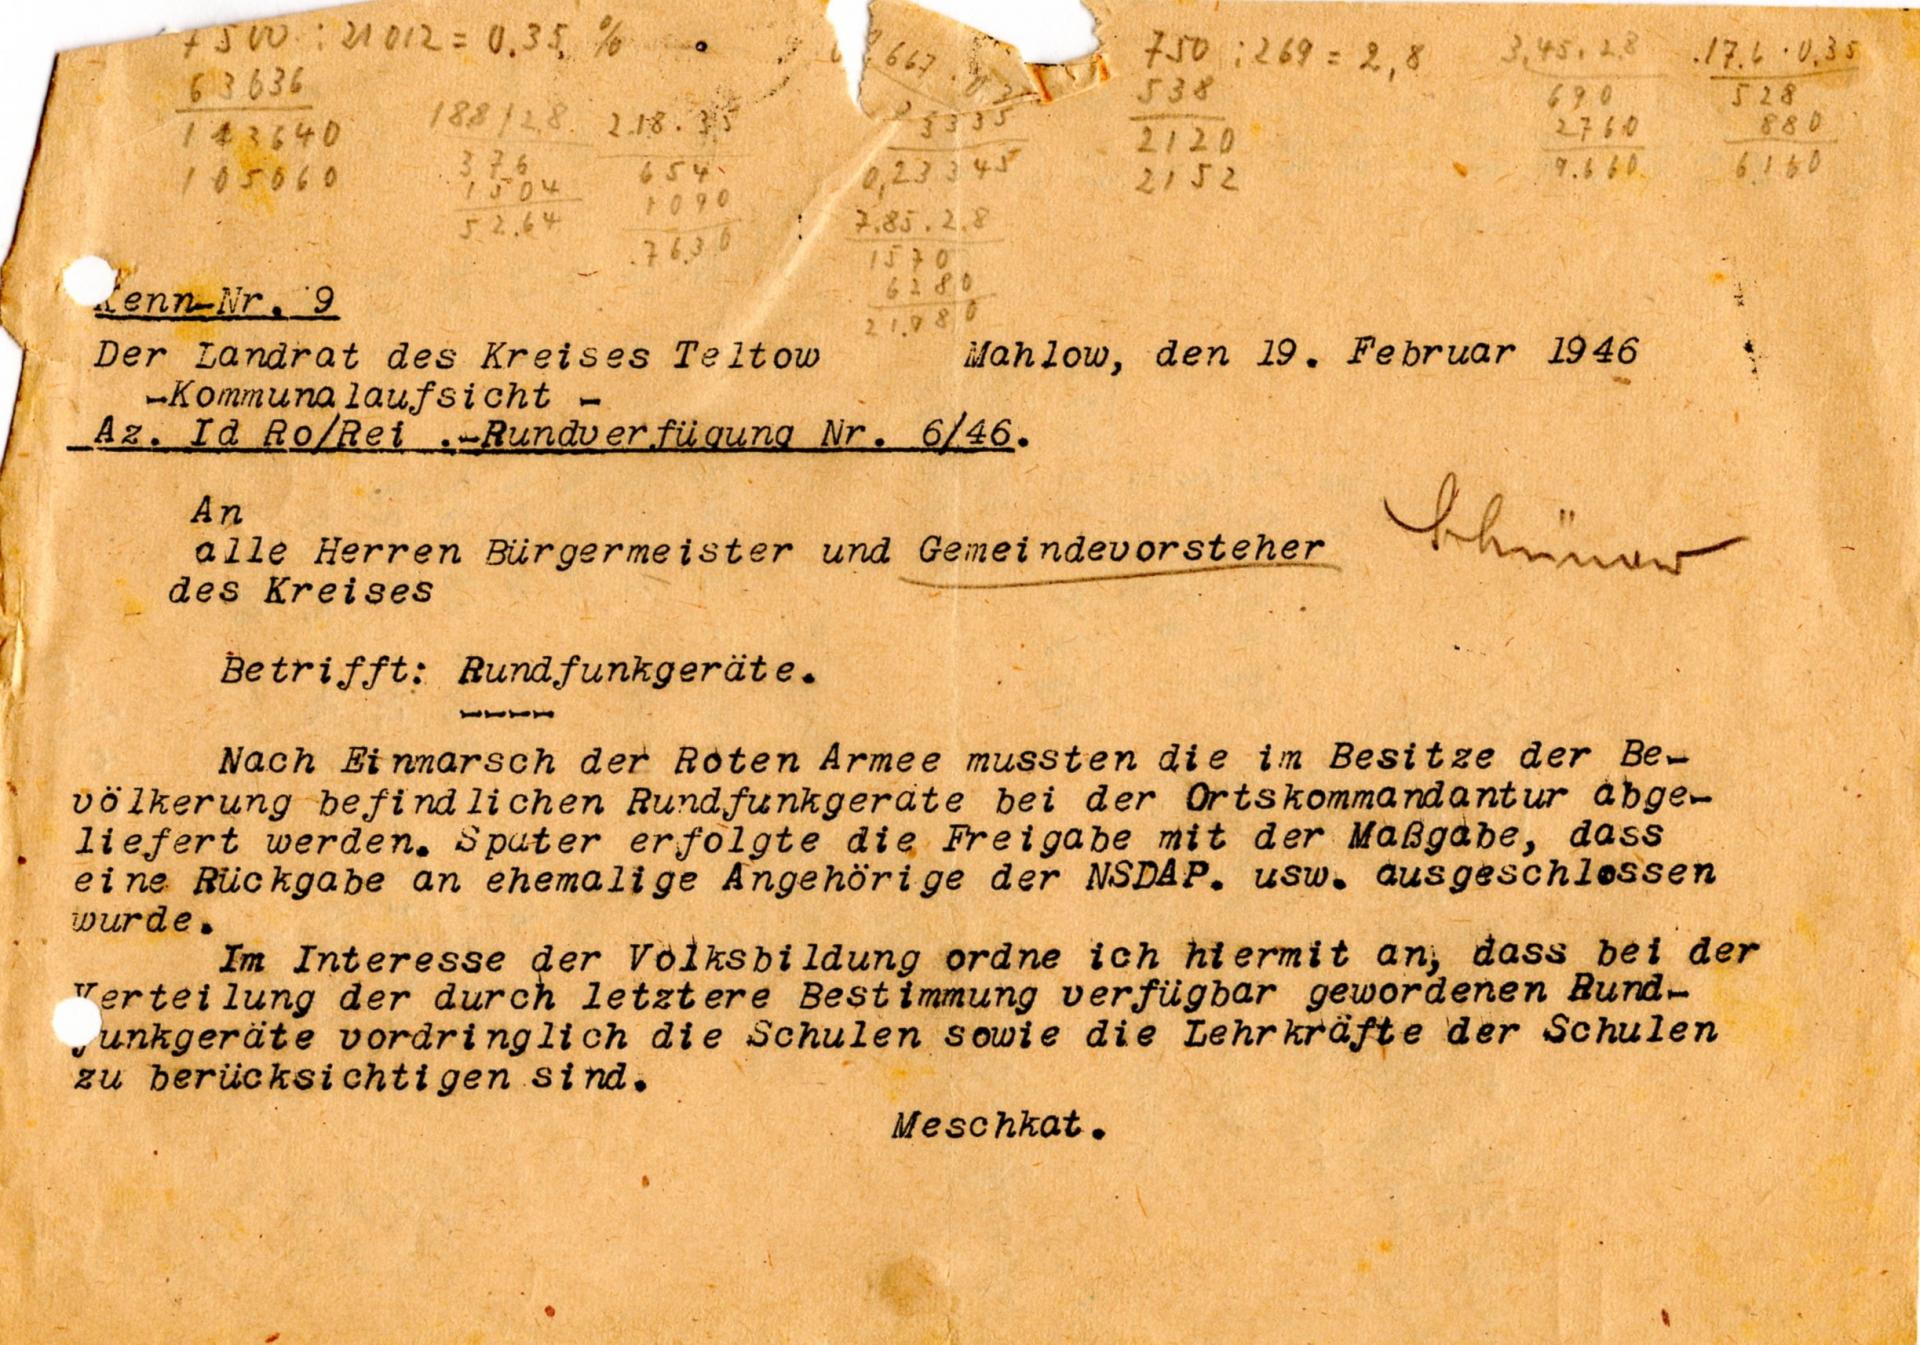 1946_Anordnung_Gemeindevorsteher_Abgabe_Rundfunkgeraete